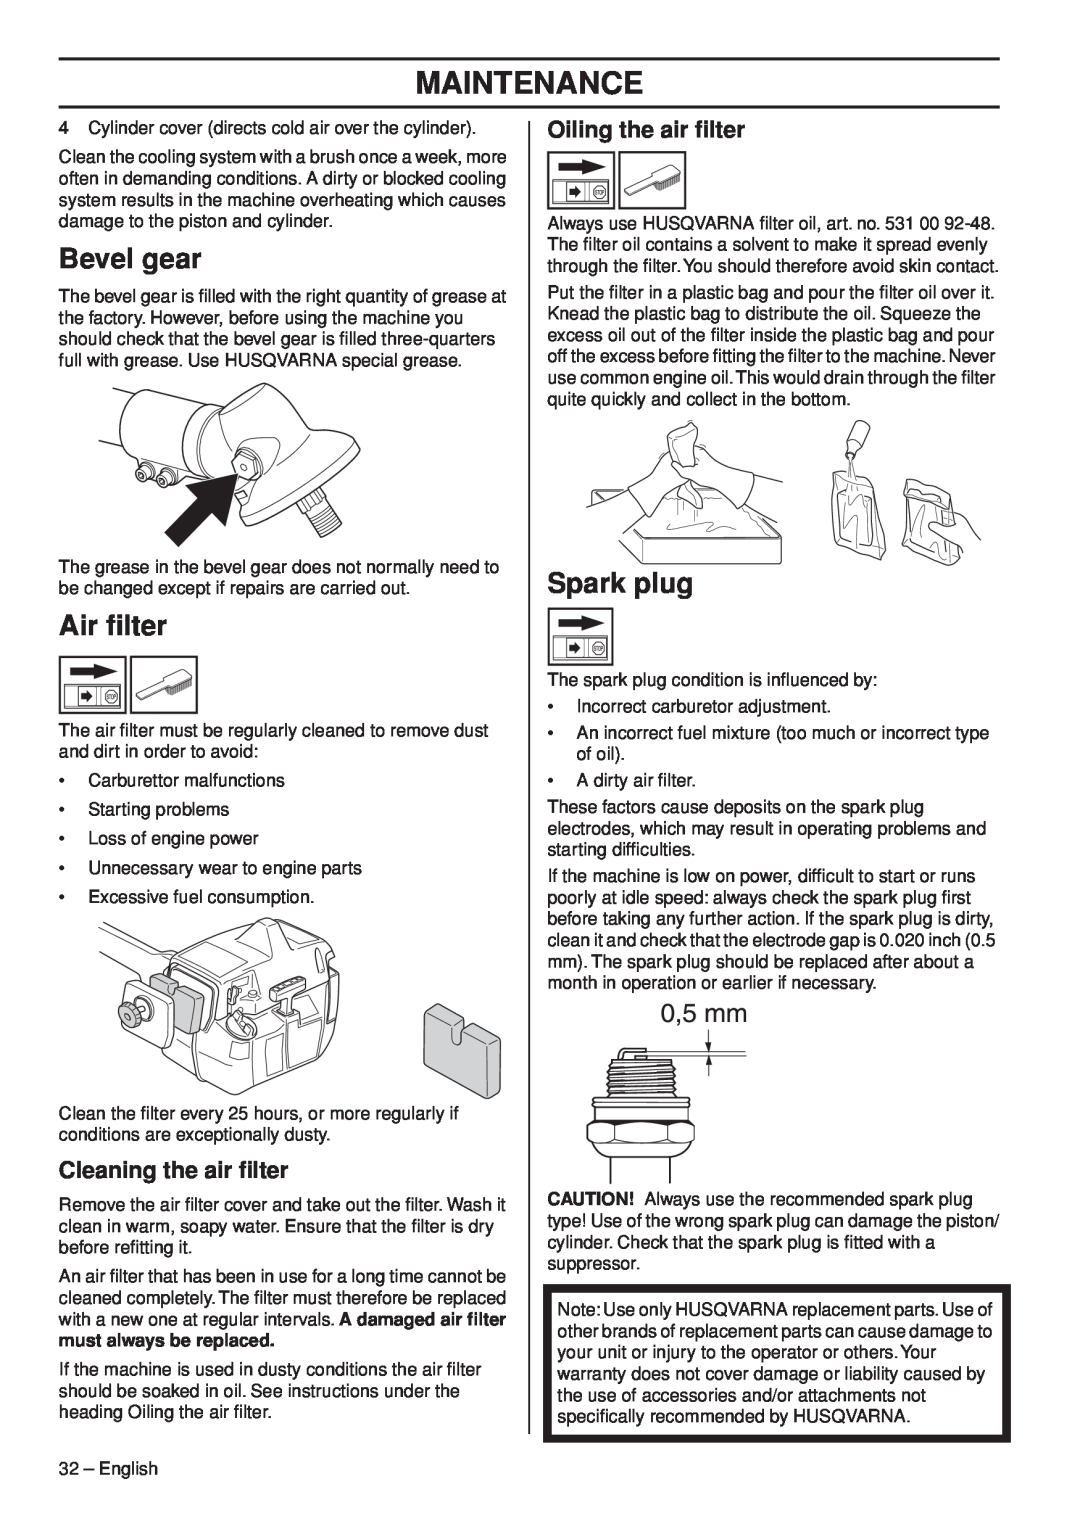 Husqvarna 1151187-95 manual Bevel gear, Air ﬁlter, Spark plug, Cleaning the air ﬁlter, Oiling the air ﬁlter, Maintenance 